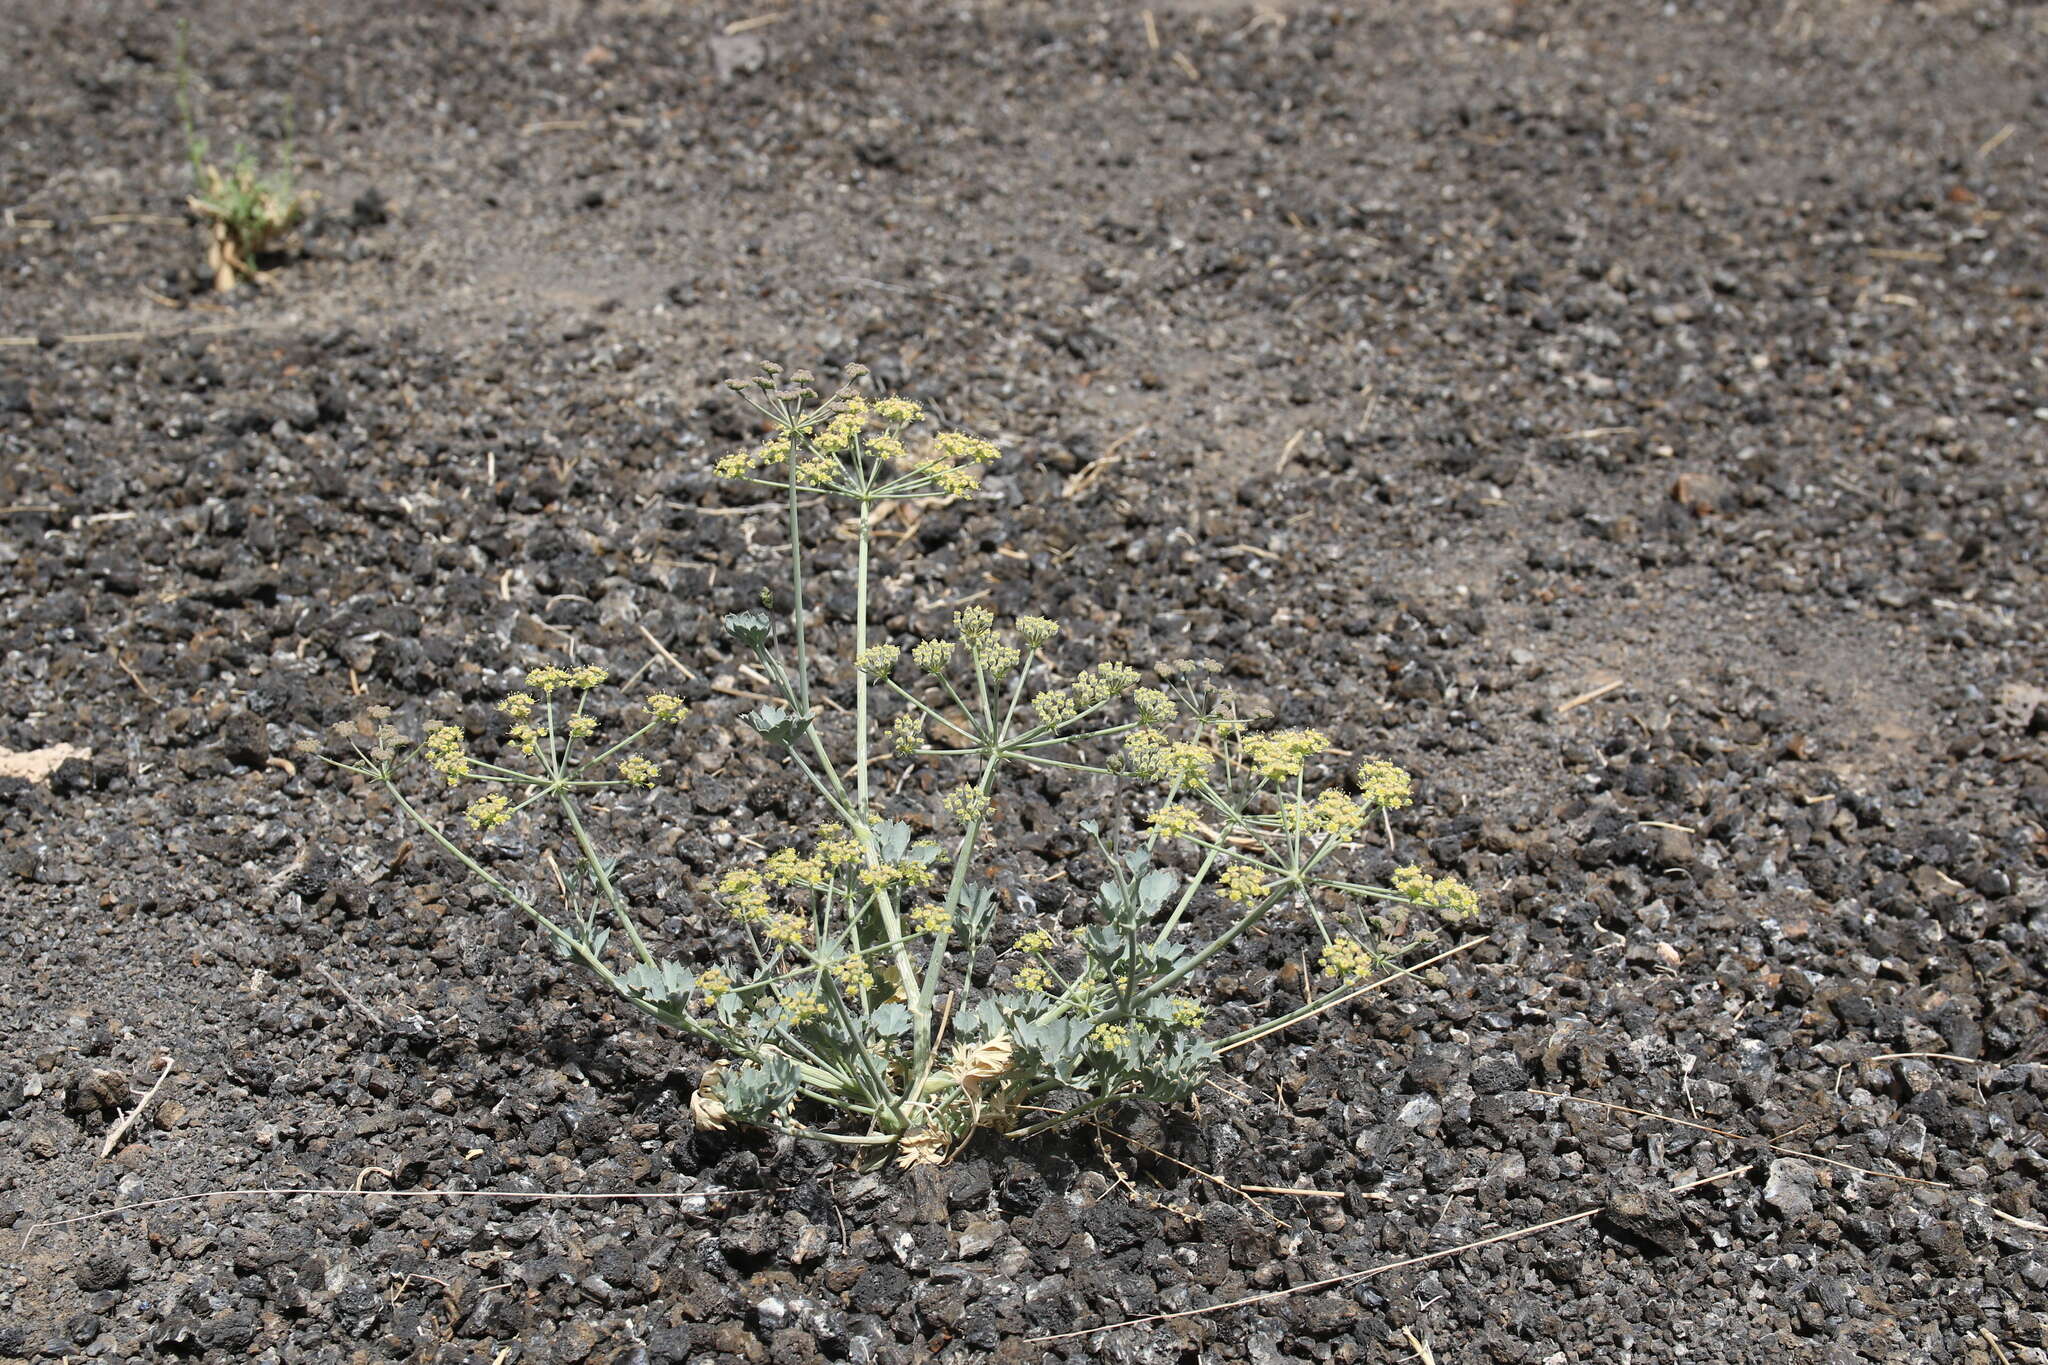 Image of Ducrosia flabellifolia Boiss.